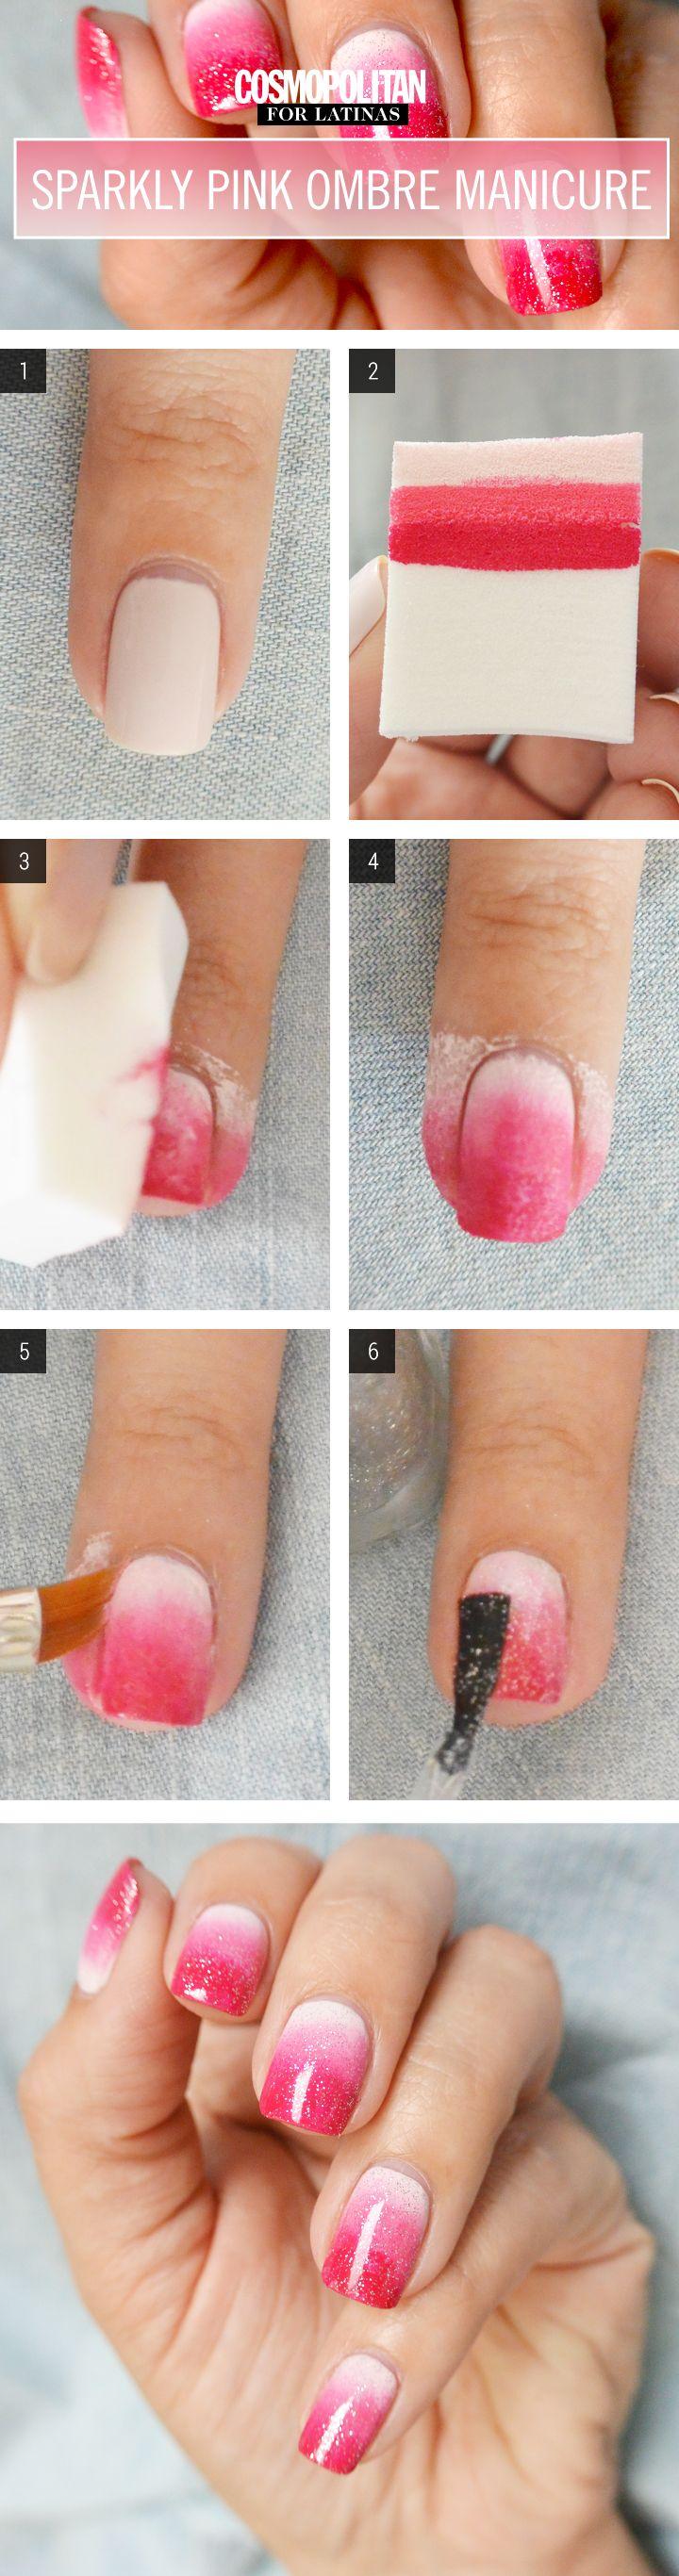 زفاف - Nail Art How-To: Sparkly Pink Ombre Manicure